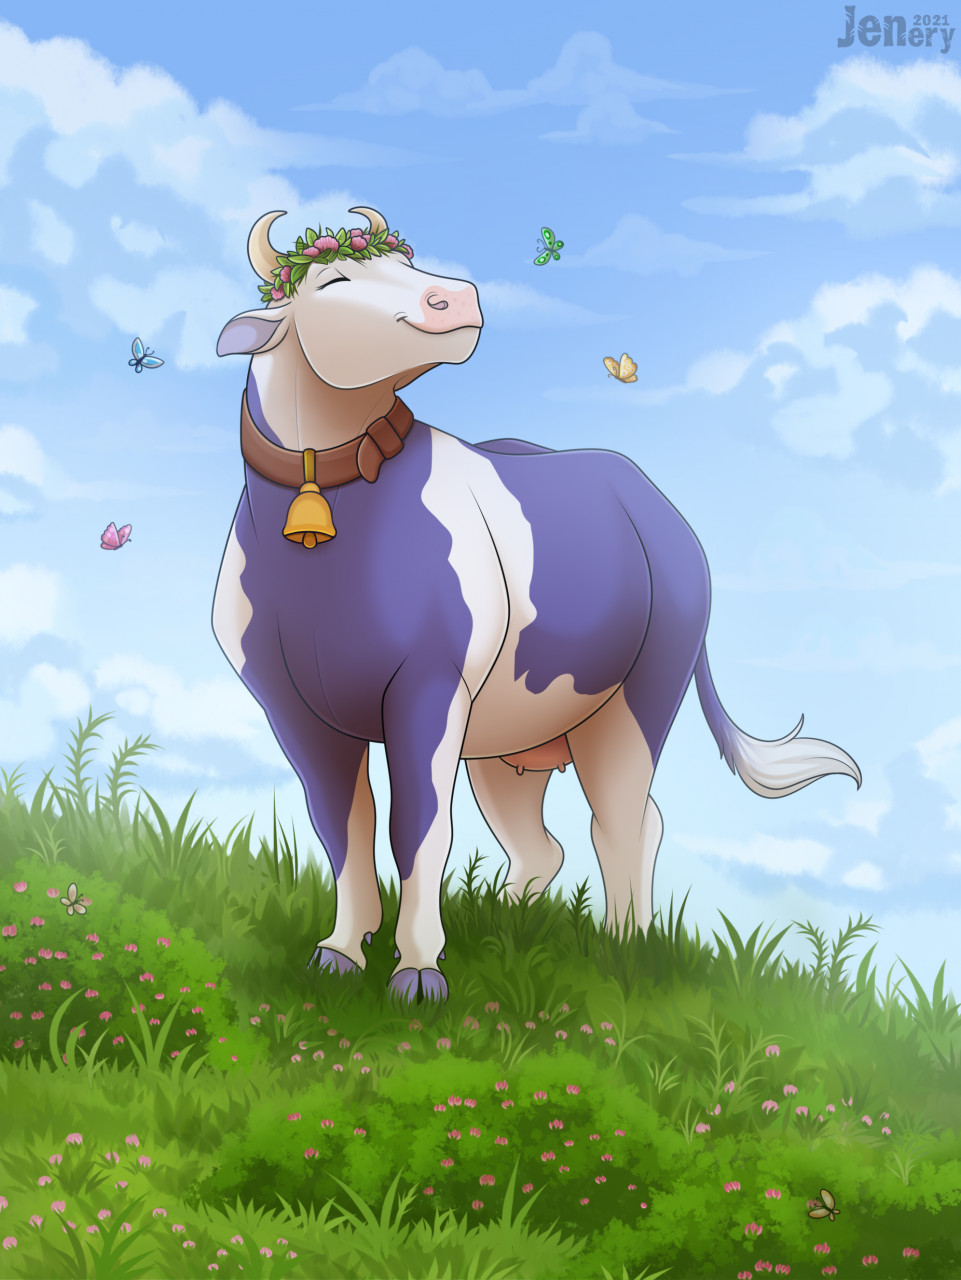 Cute cartoon cows Royalty Free Vector Image - VectorStock